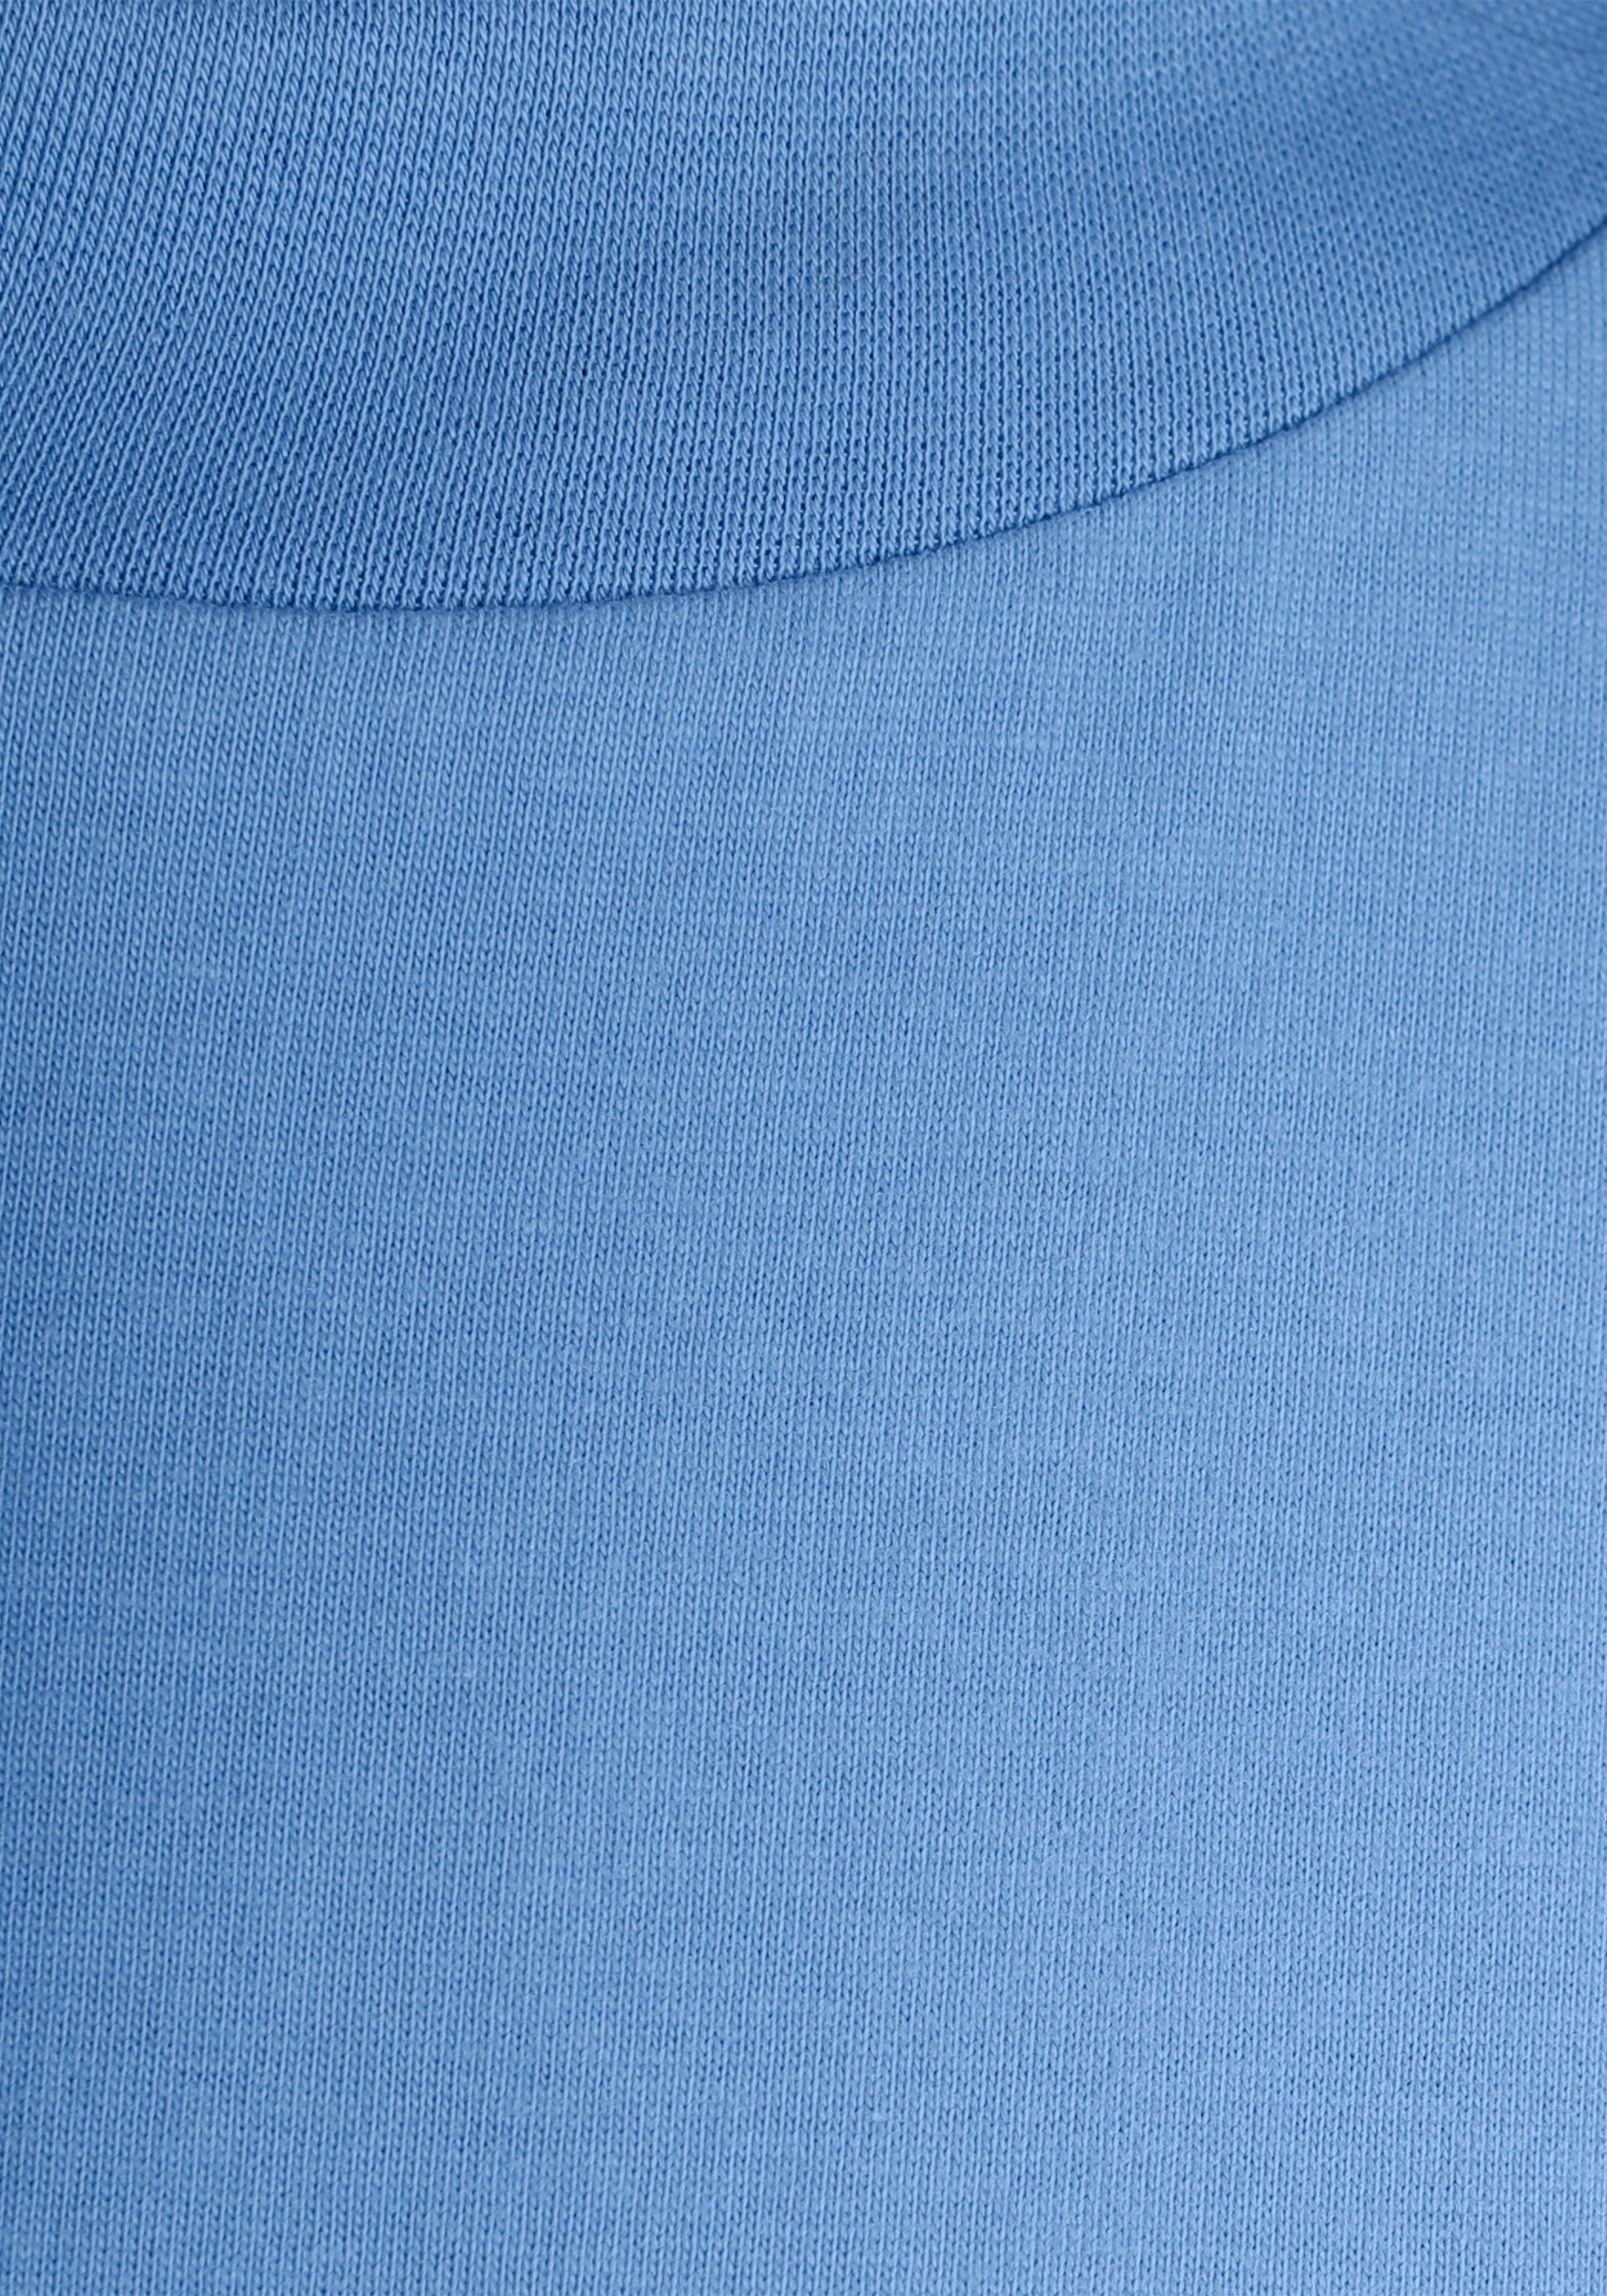 modisch mit himmelblau Rippen-Rundhalsausschnitt breitem Oversize-Shirt AJC